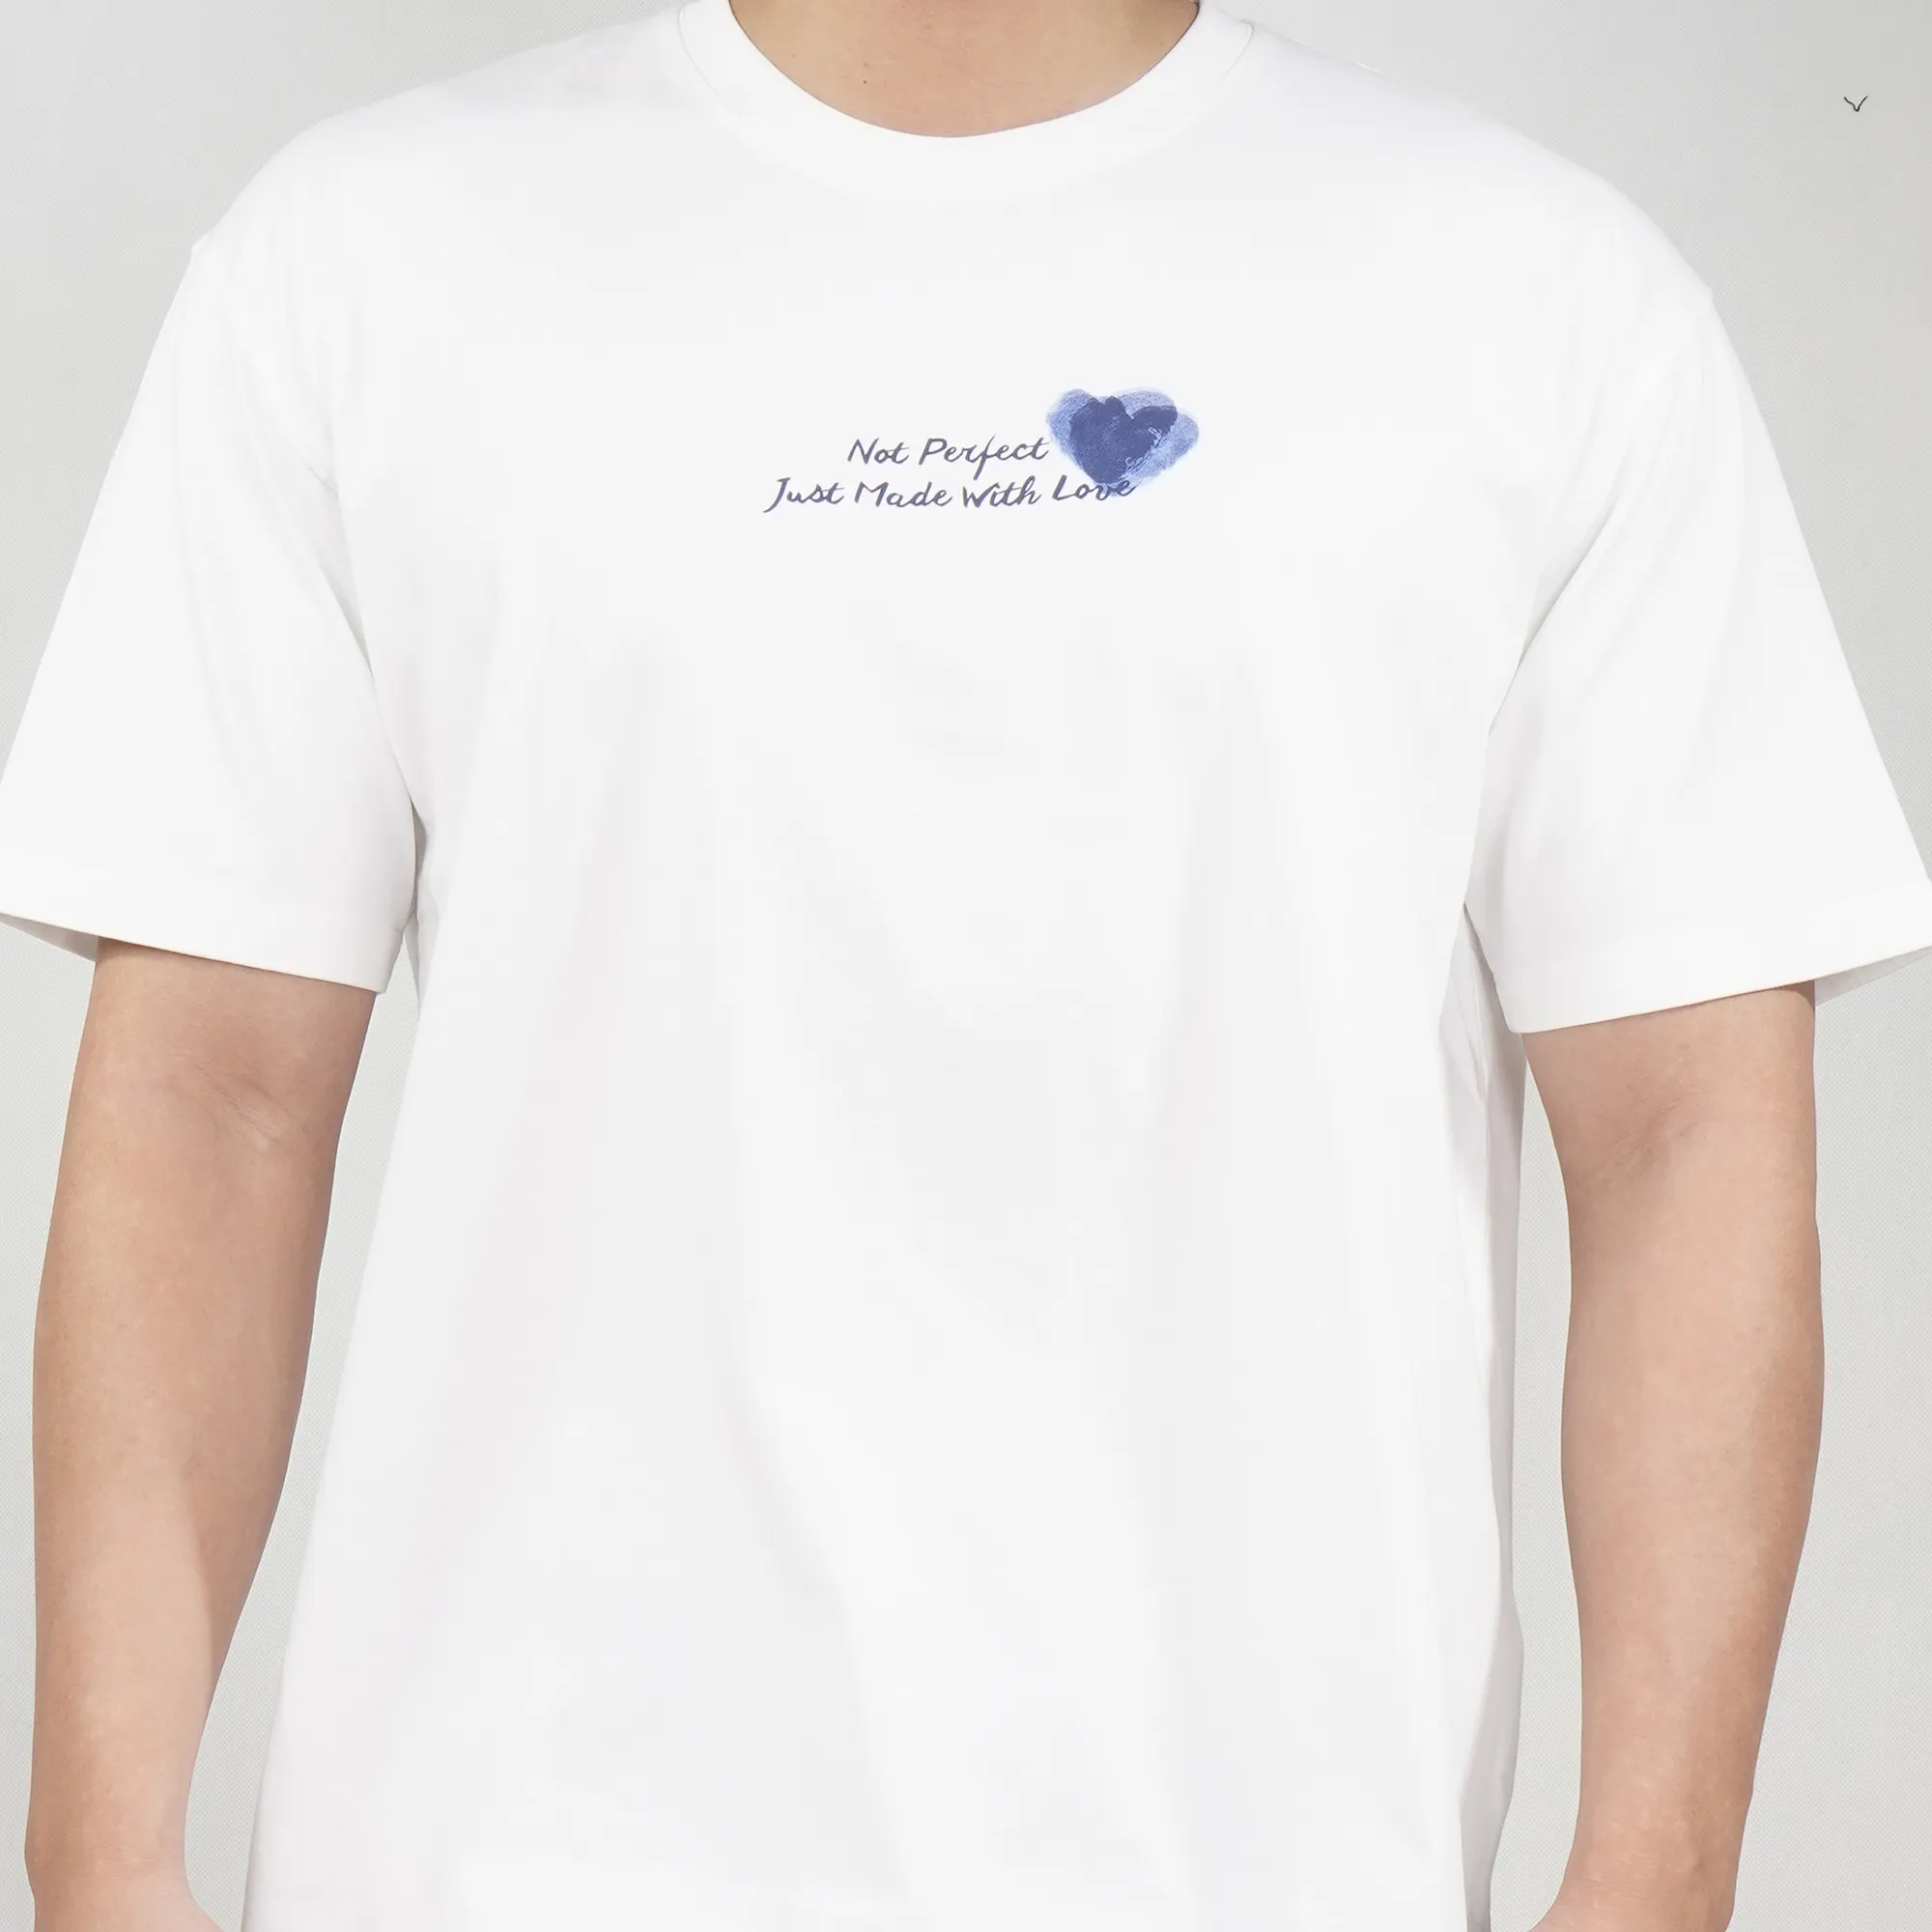 Küçük kalp baskı ve çizgi kelimeleri ile erkek örgü kazak beyaz T shirt